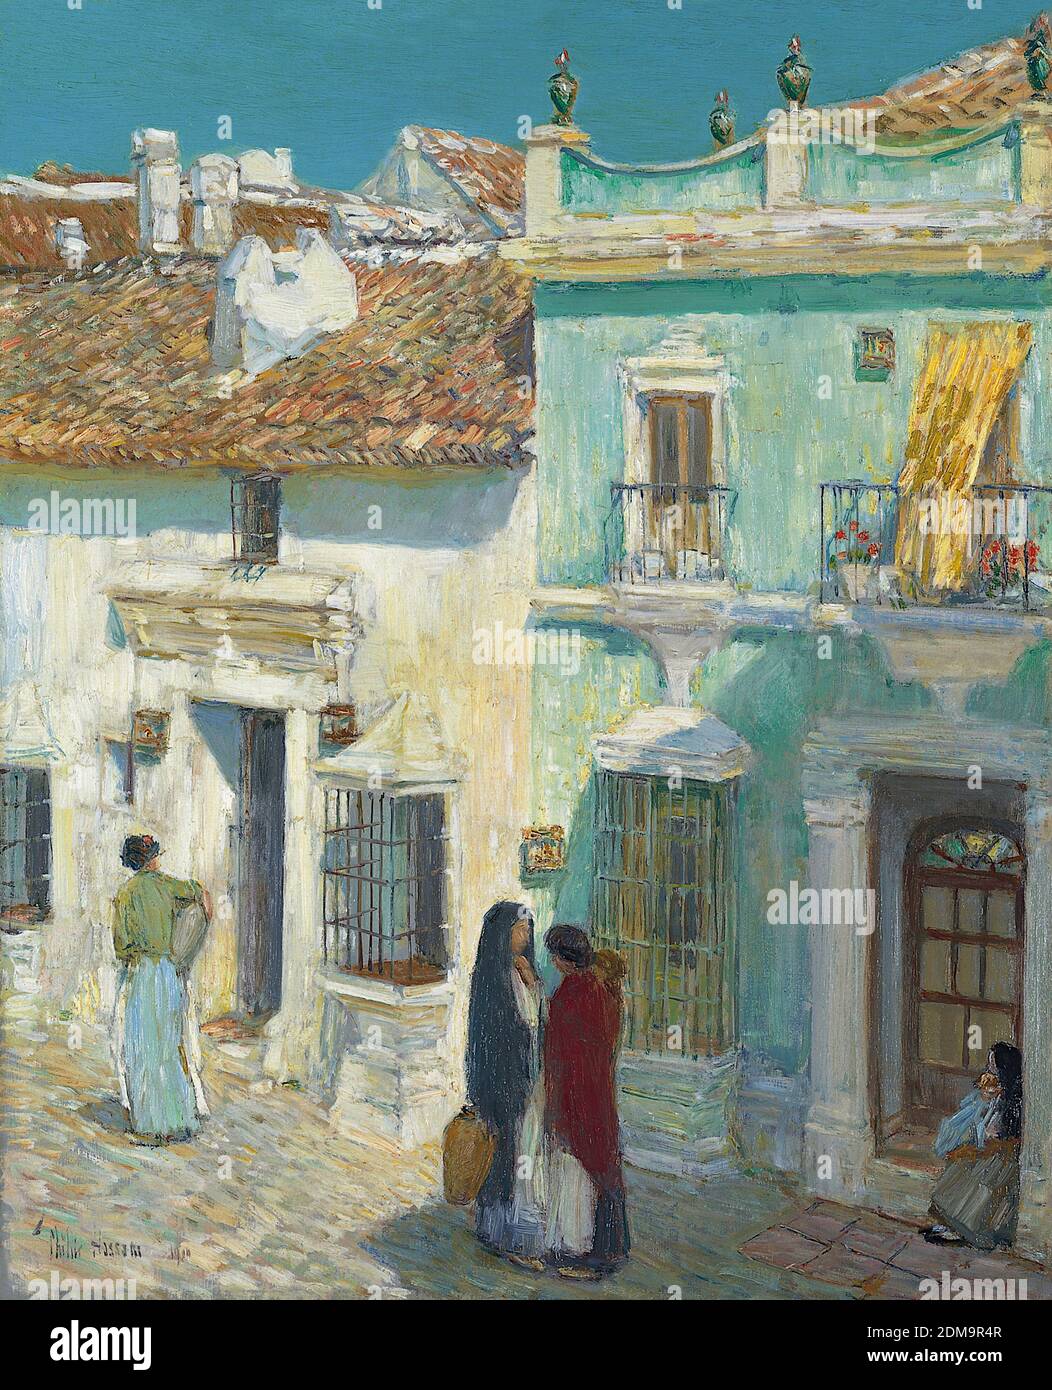 Plaza de la Merced, Ronda 1910 American Impressionist Painting by Childe Hassam - altissima risoluzione e qualità dell'immagine Foto Stock